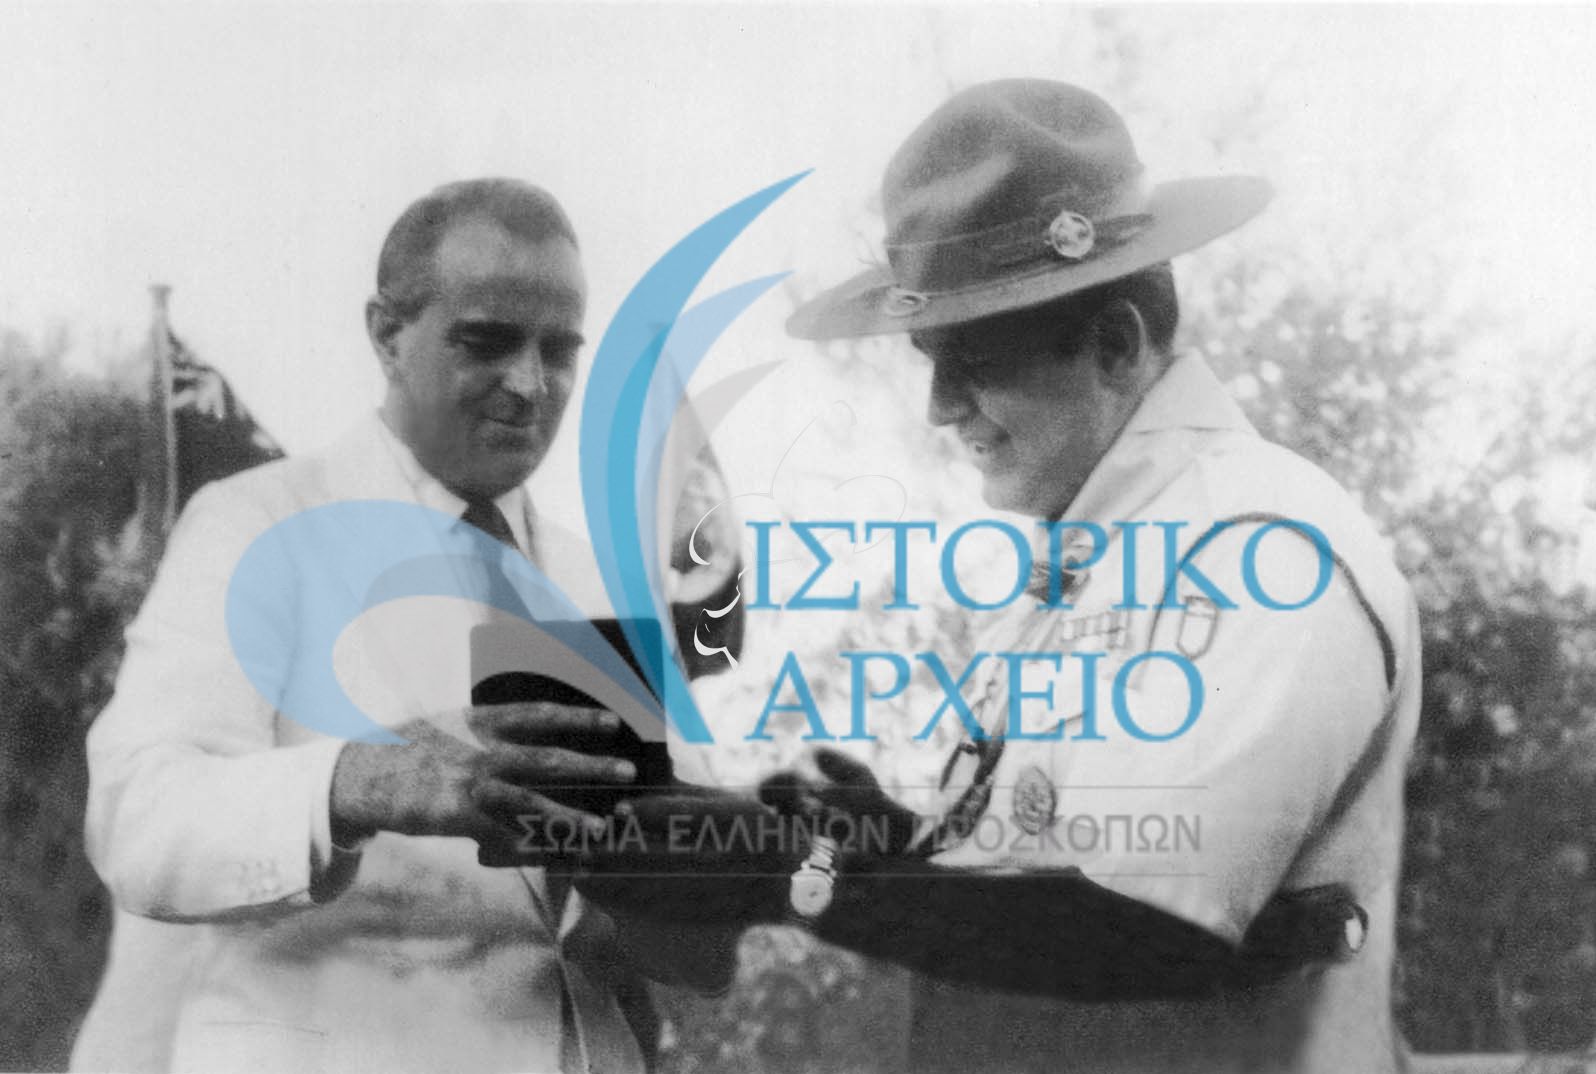 Ο Πρωθυπουργός Κωνσταντίνος Καραμανλής παραλαμβάνει από τον ΓΕ Δ. Αλεξάτο Αναμνηστικό του Τζάμπορη Αποδήμων του 1956 στον Άγιο Ανδρέα.